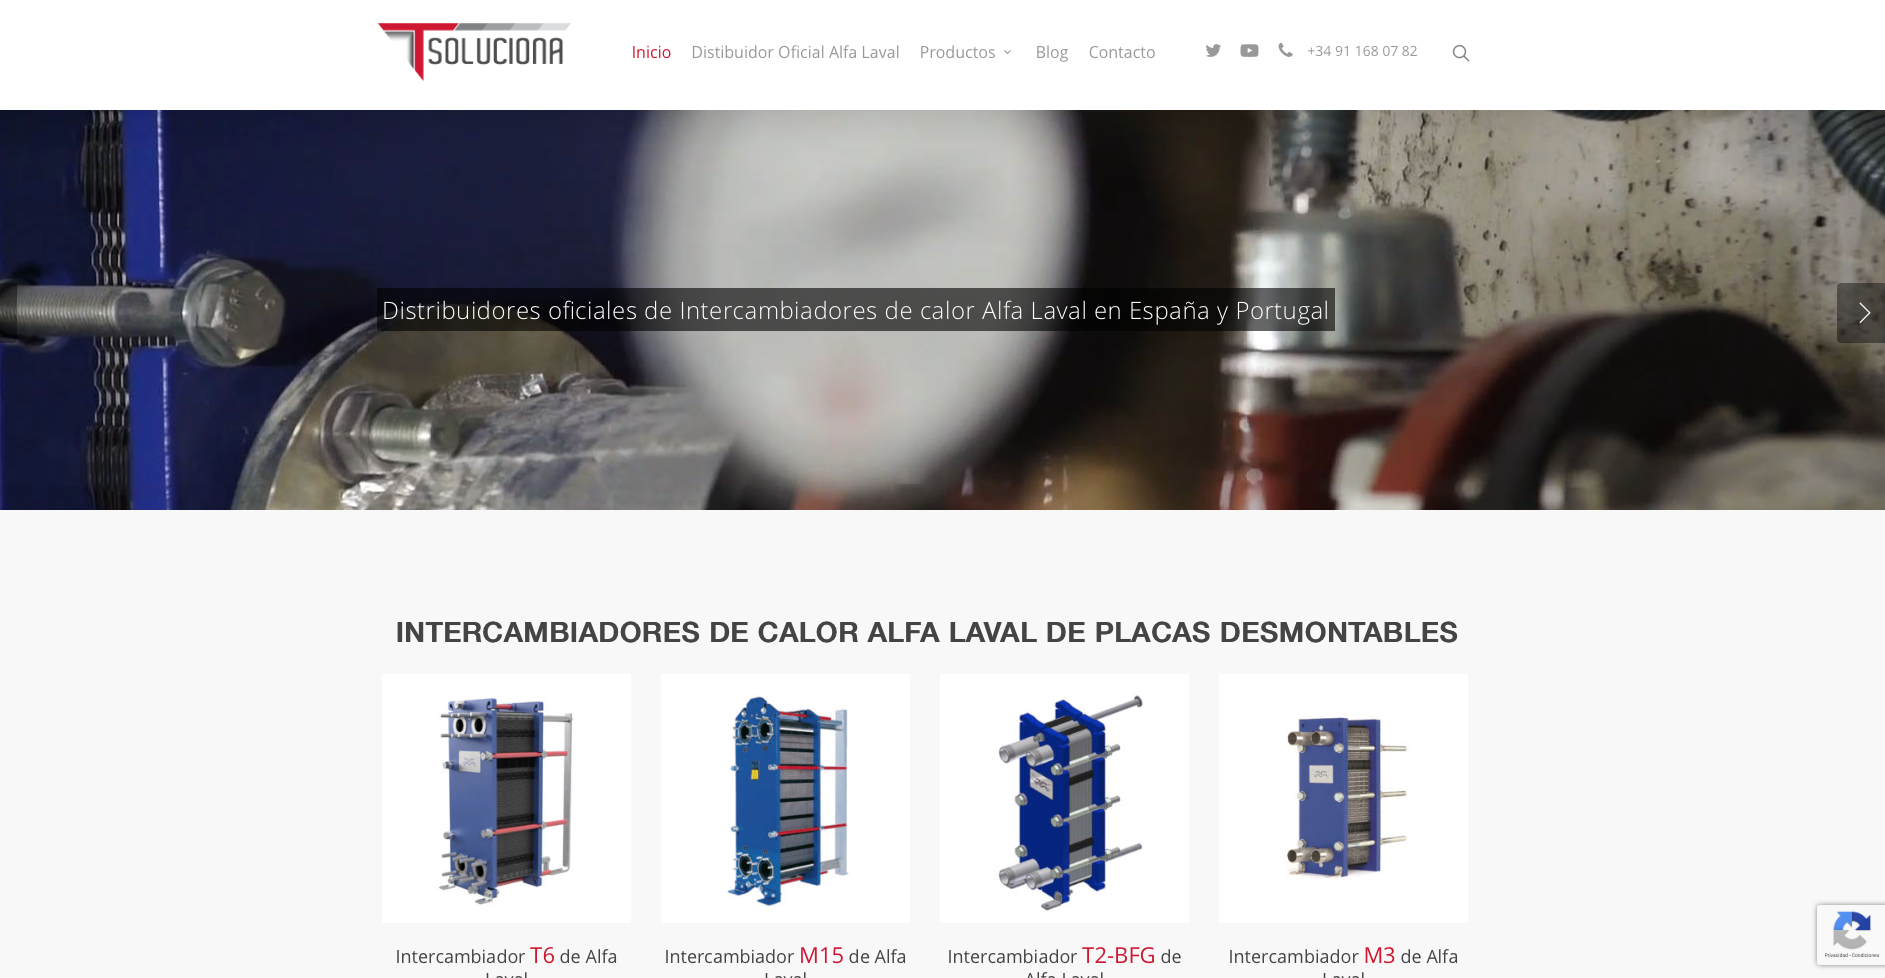 Estrenamos nueva Web en T-Soluciona, distribuidor Oficial de Intercambiadores Alfa Laval